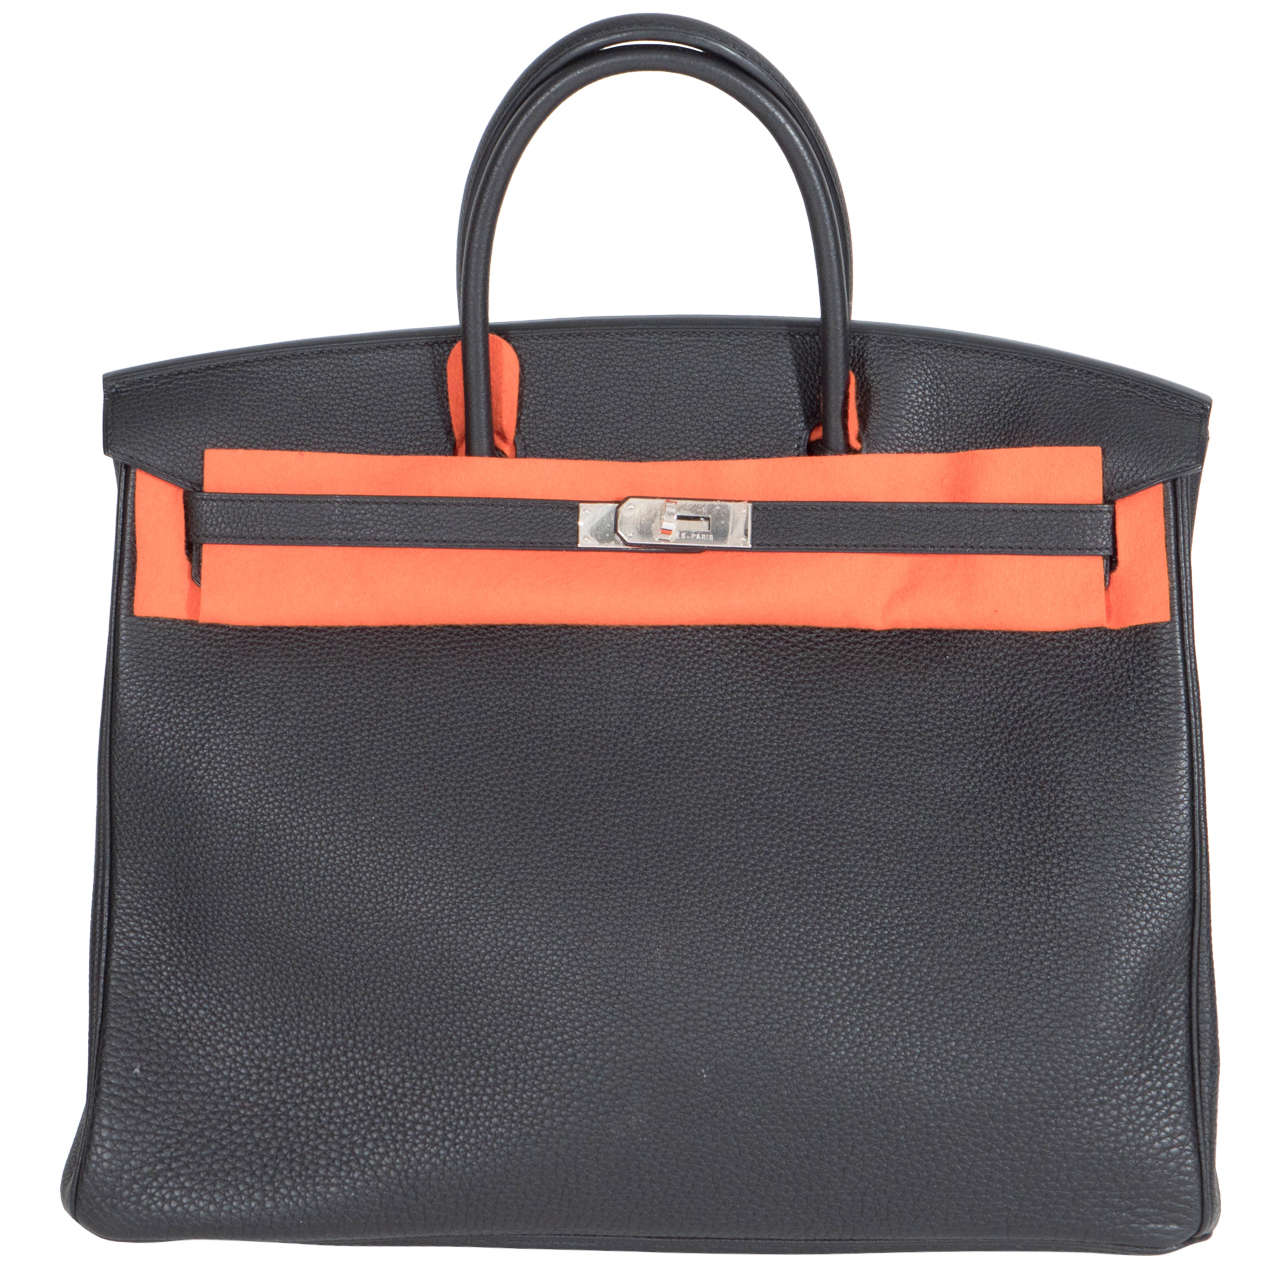 Hermès Paris Birkin Bag 40 in Togo Leather with Palladium Hardware, 2008 For Sale